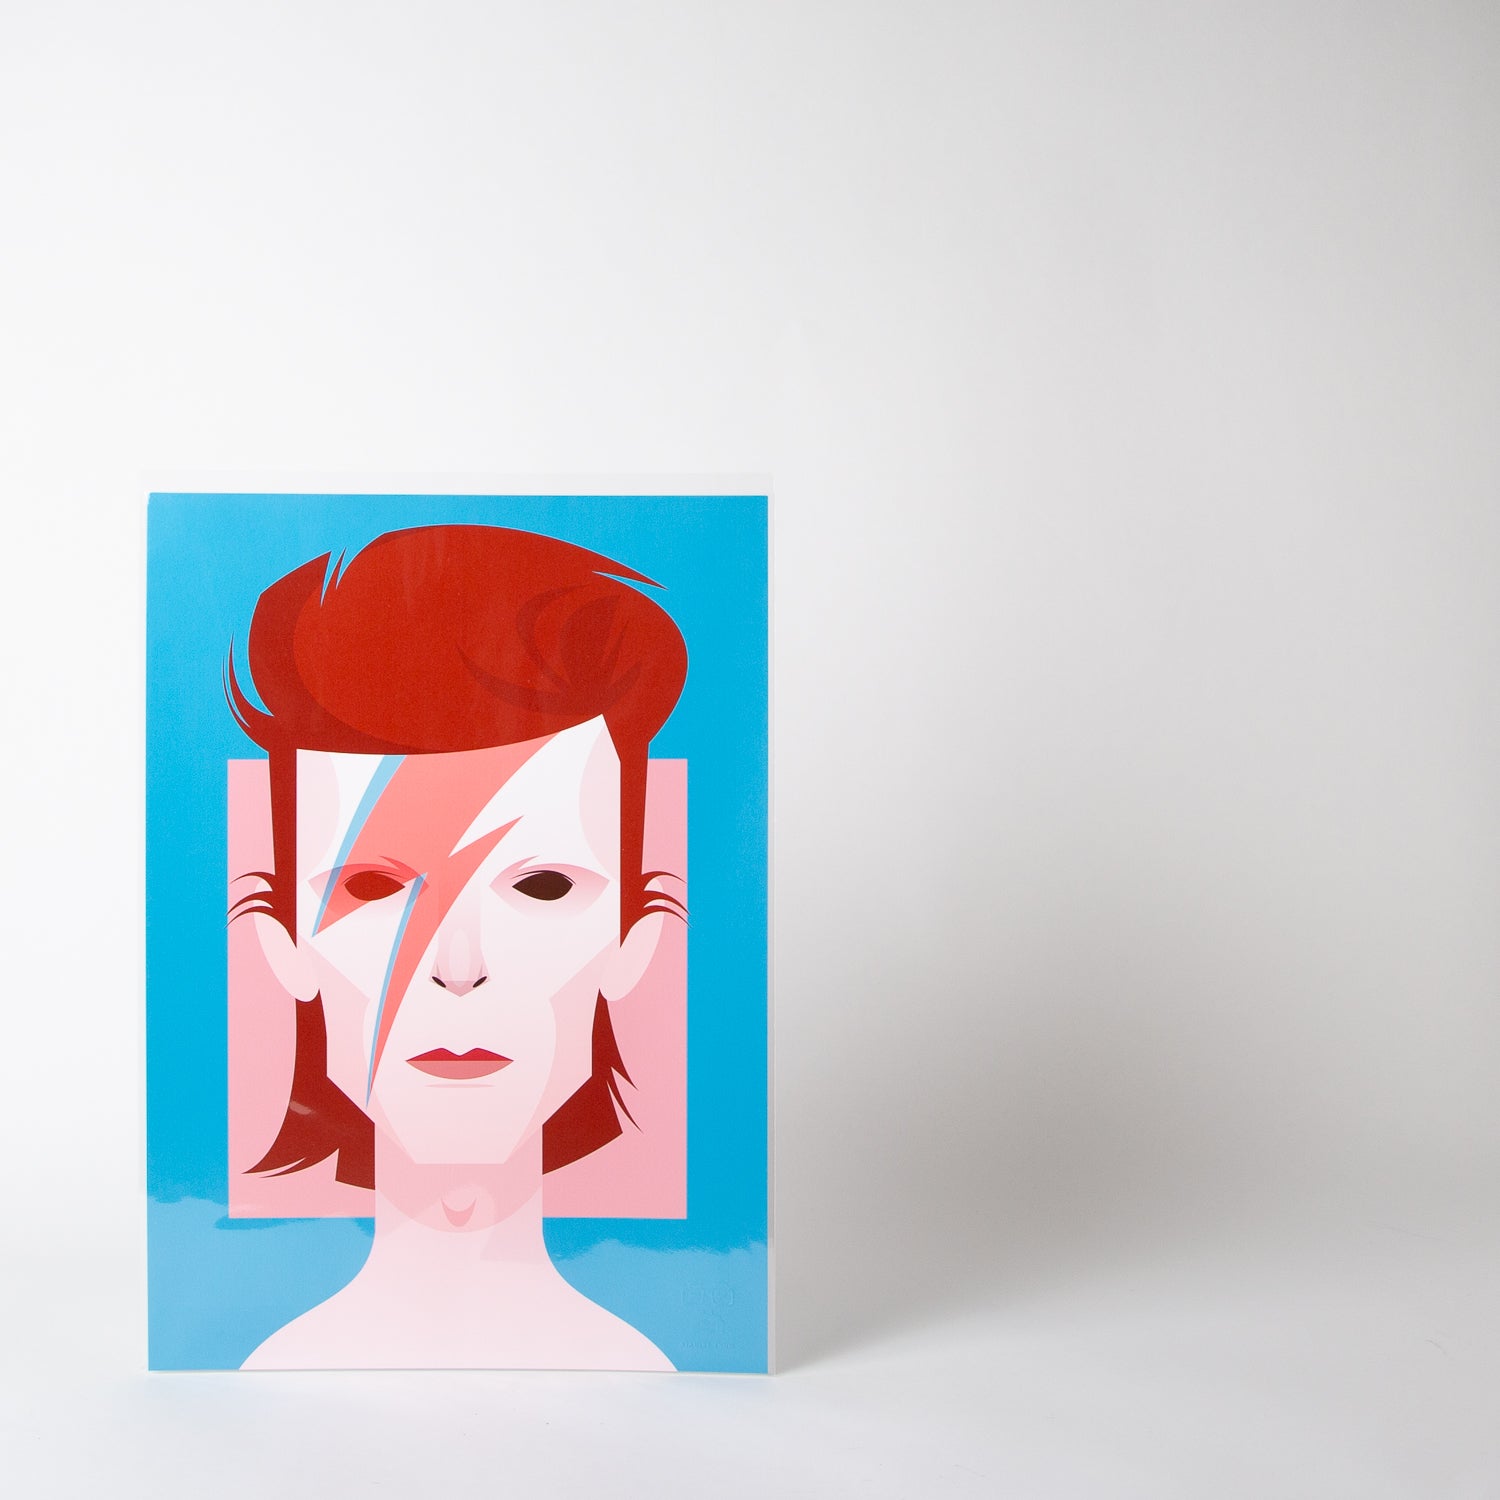 David Bowie portraiture Art by Stanley Chow Prints at Secret Location